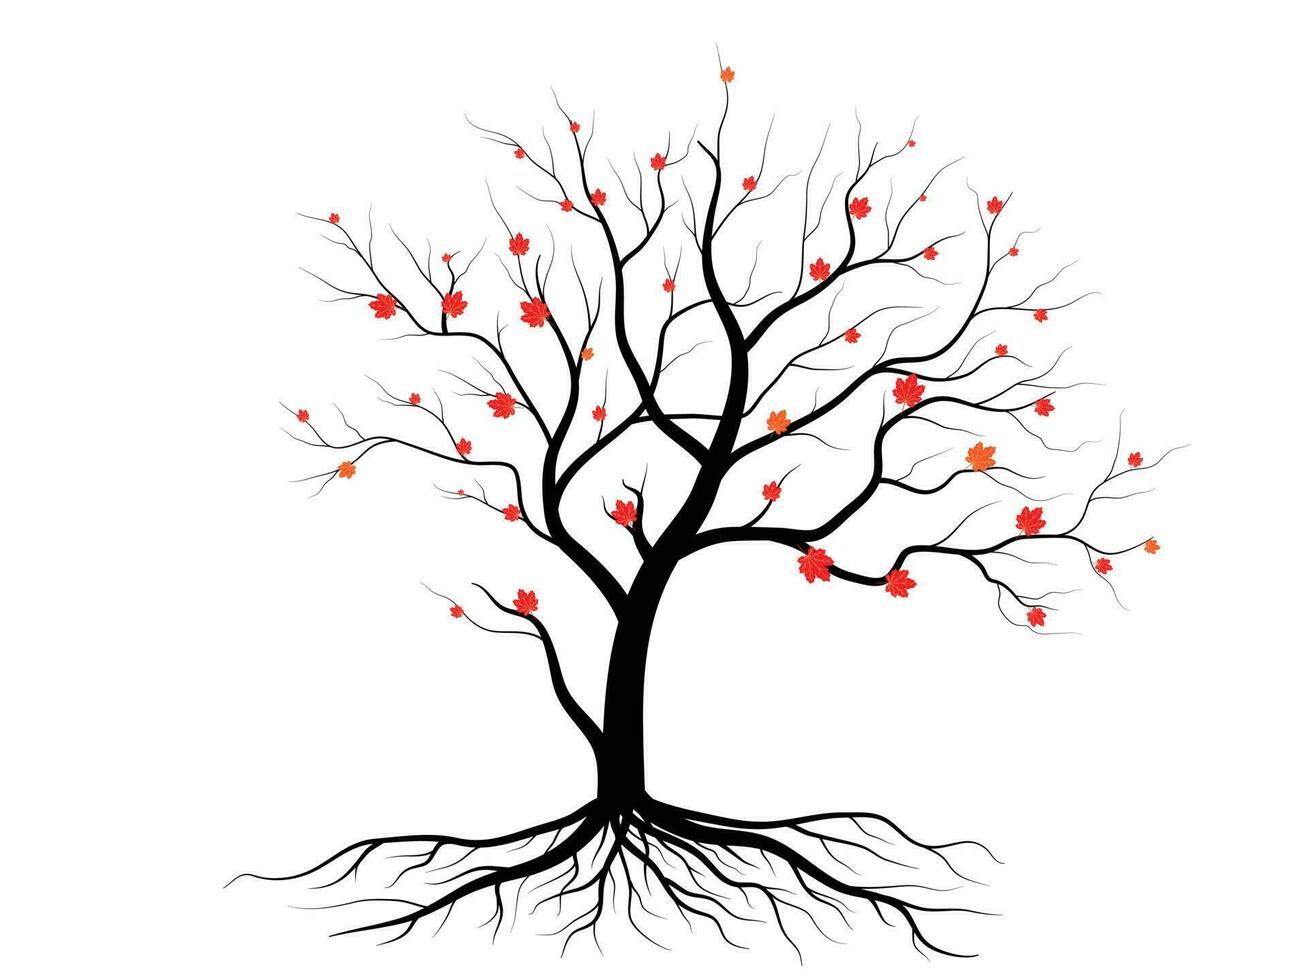 Baum und Blätter für den Hintergrundstil der Herbstsaison. willkommenes konzept für die herbstsaison. vektor